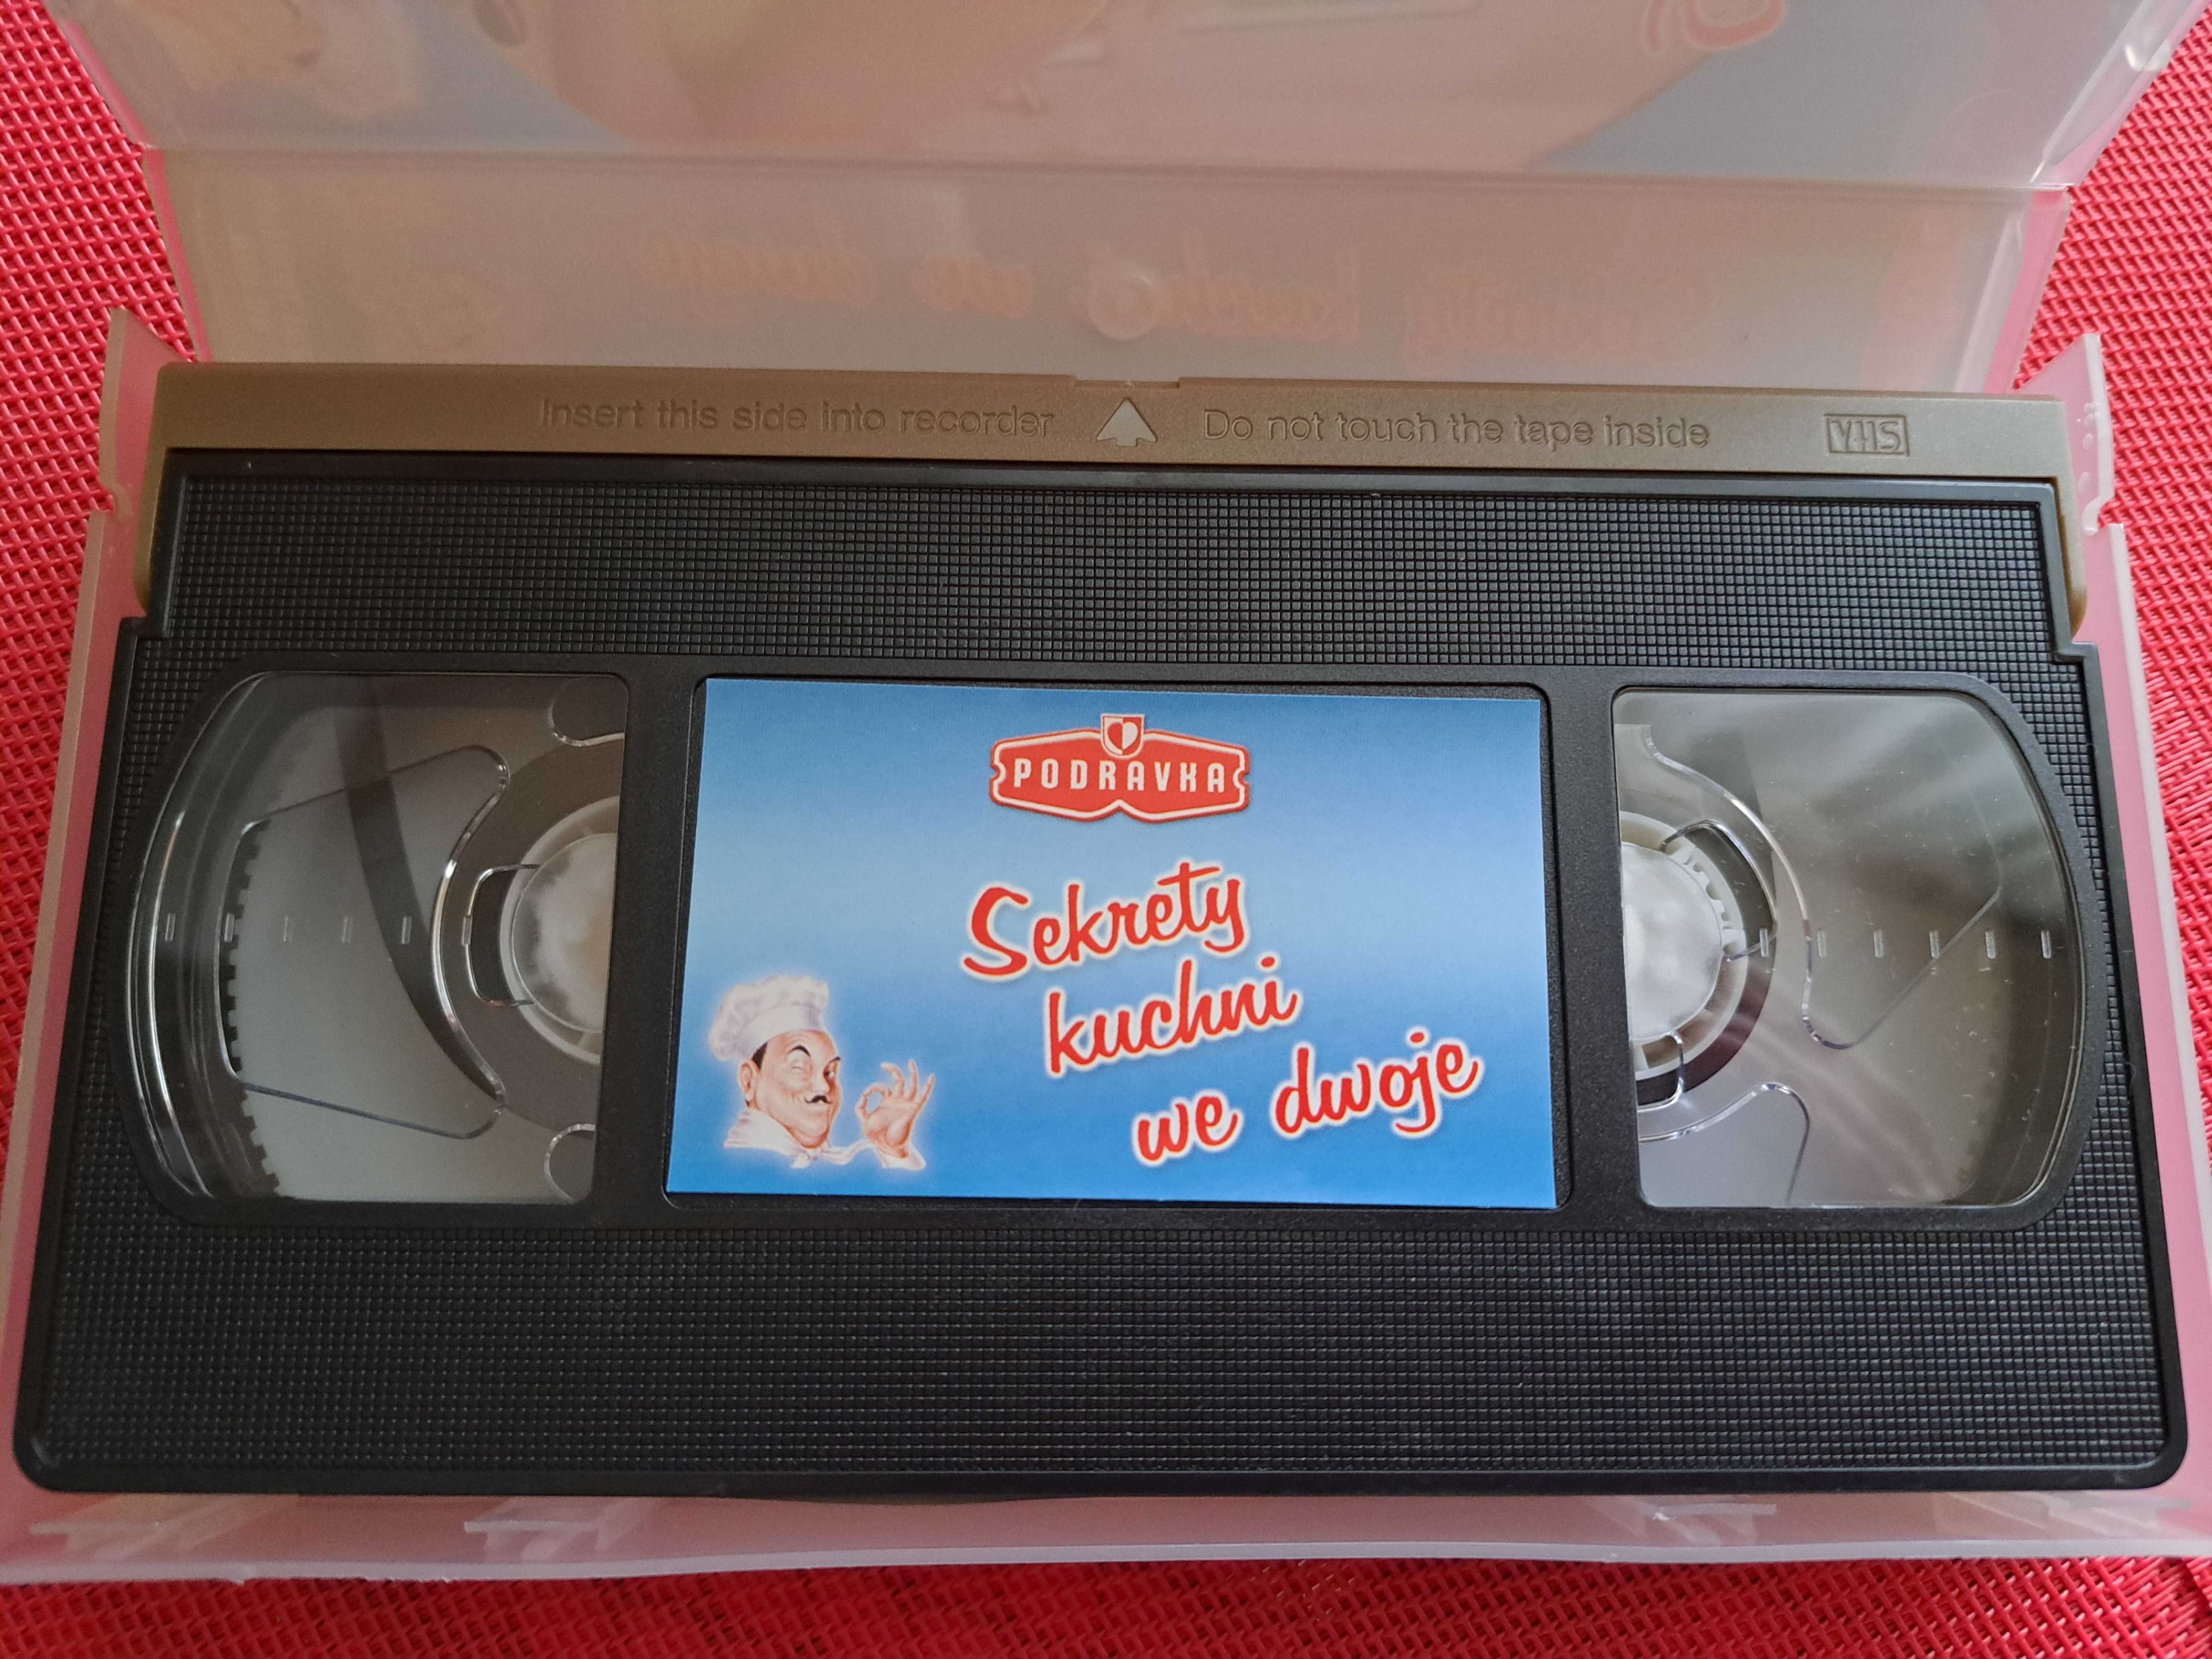 Sekrety kuchni we dwoje PODRAVKA kaseta VHS